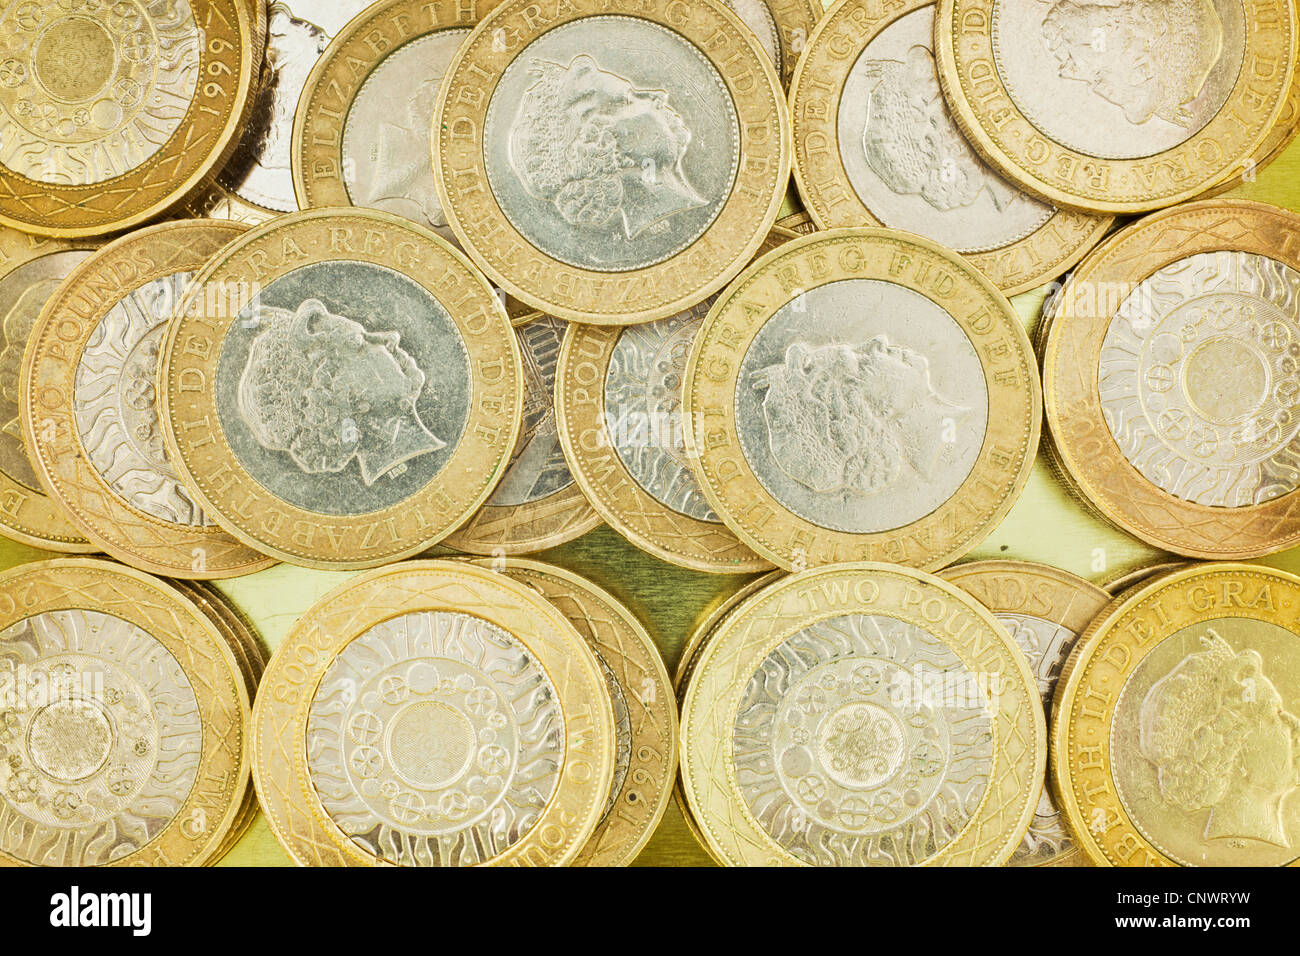 Sterling-Währung Münzen £2 Bezeichnung [£2] Stockfoto